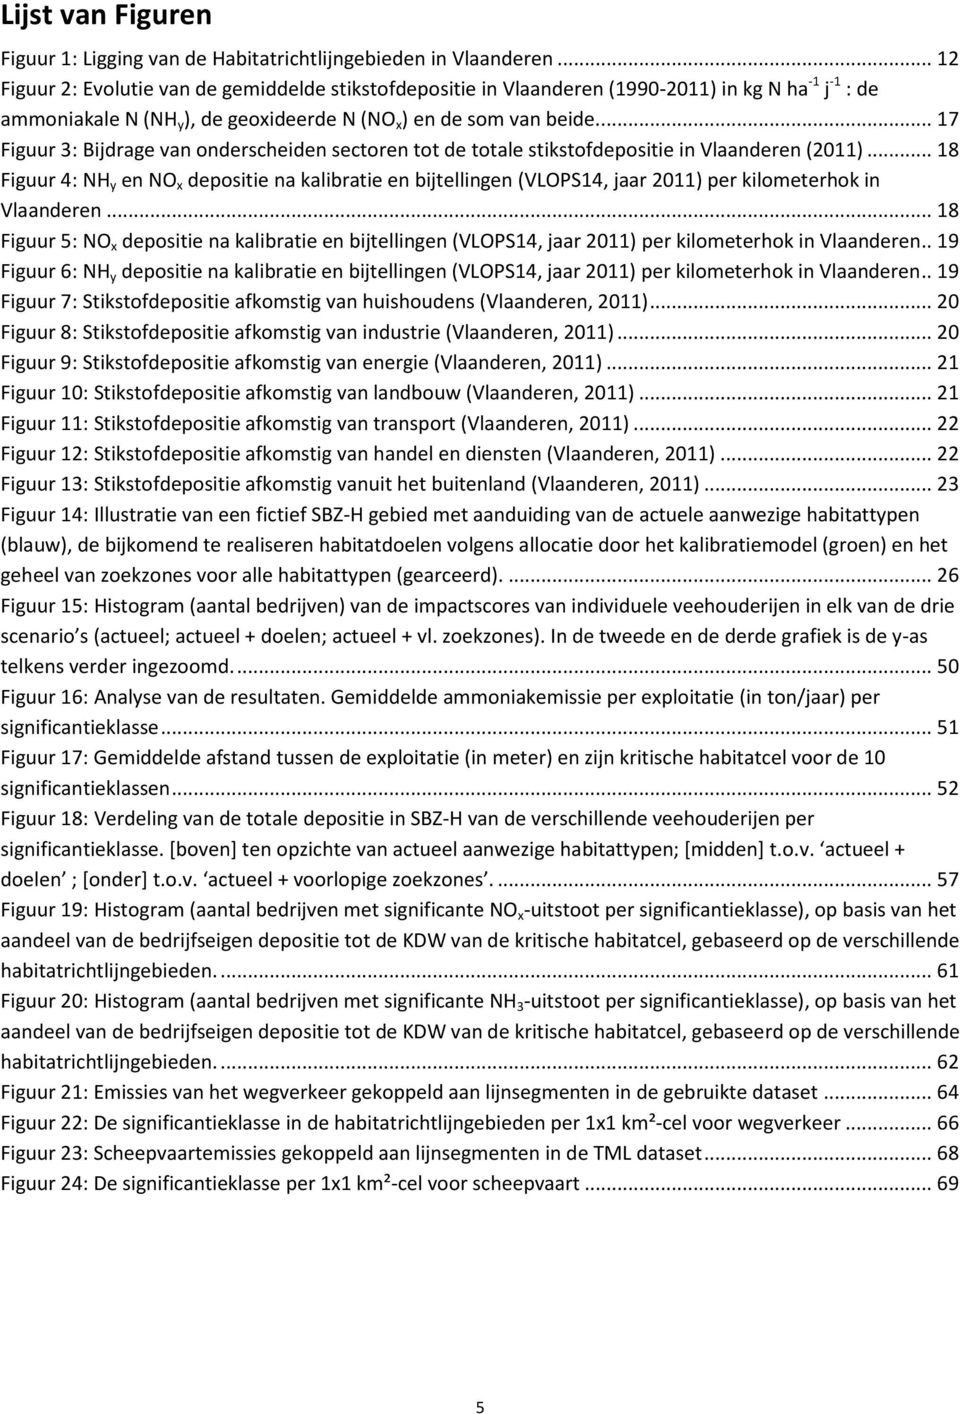 ... 17 Figuur 3: Bijdrage van onderscheiden sectoren tot de totale stikstofdepositie in Vlaanderen (2011).